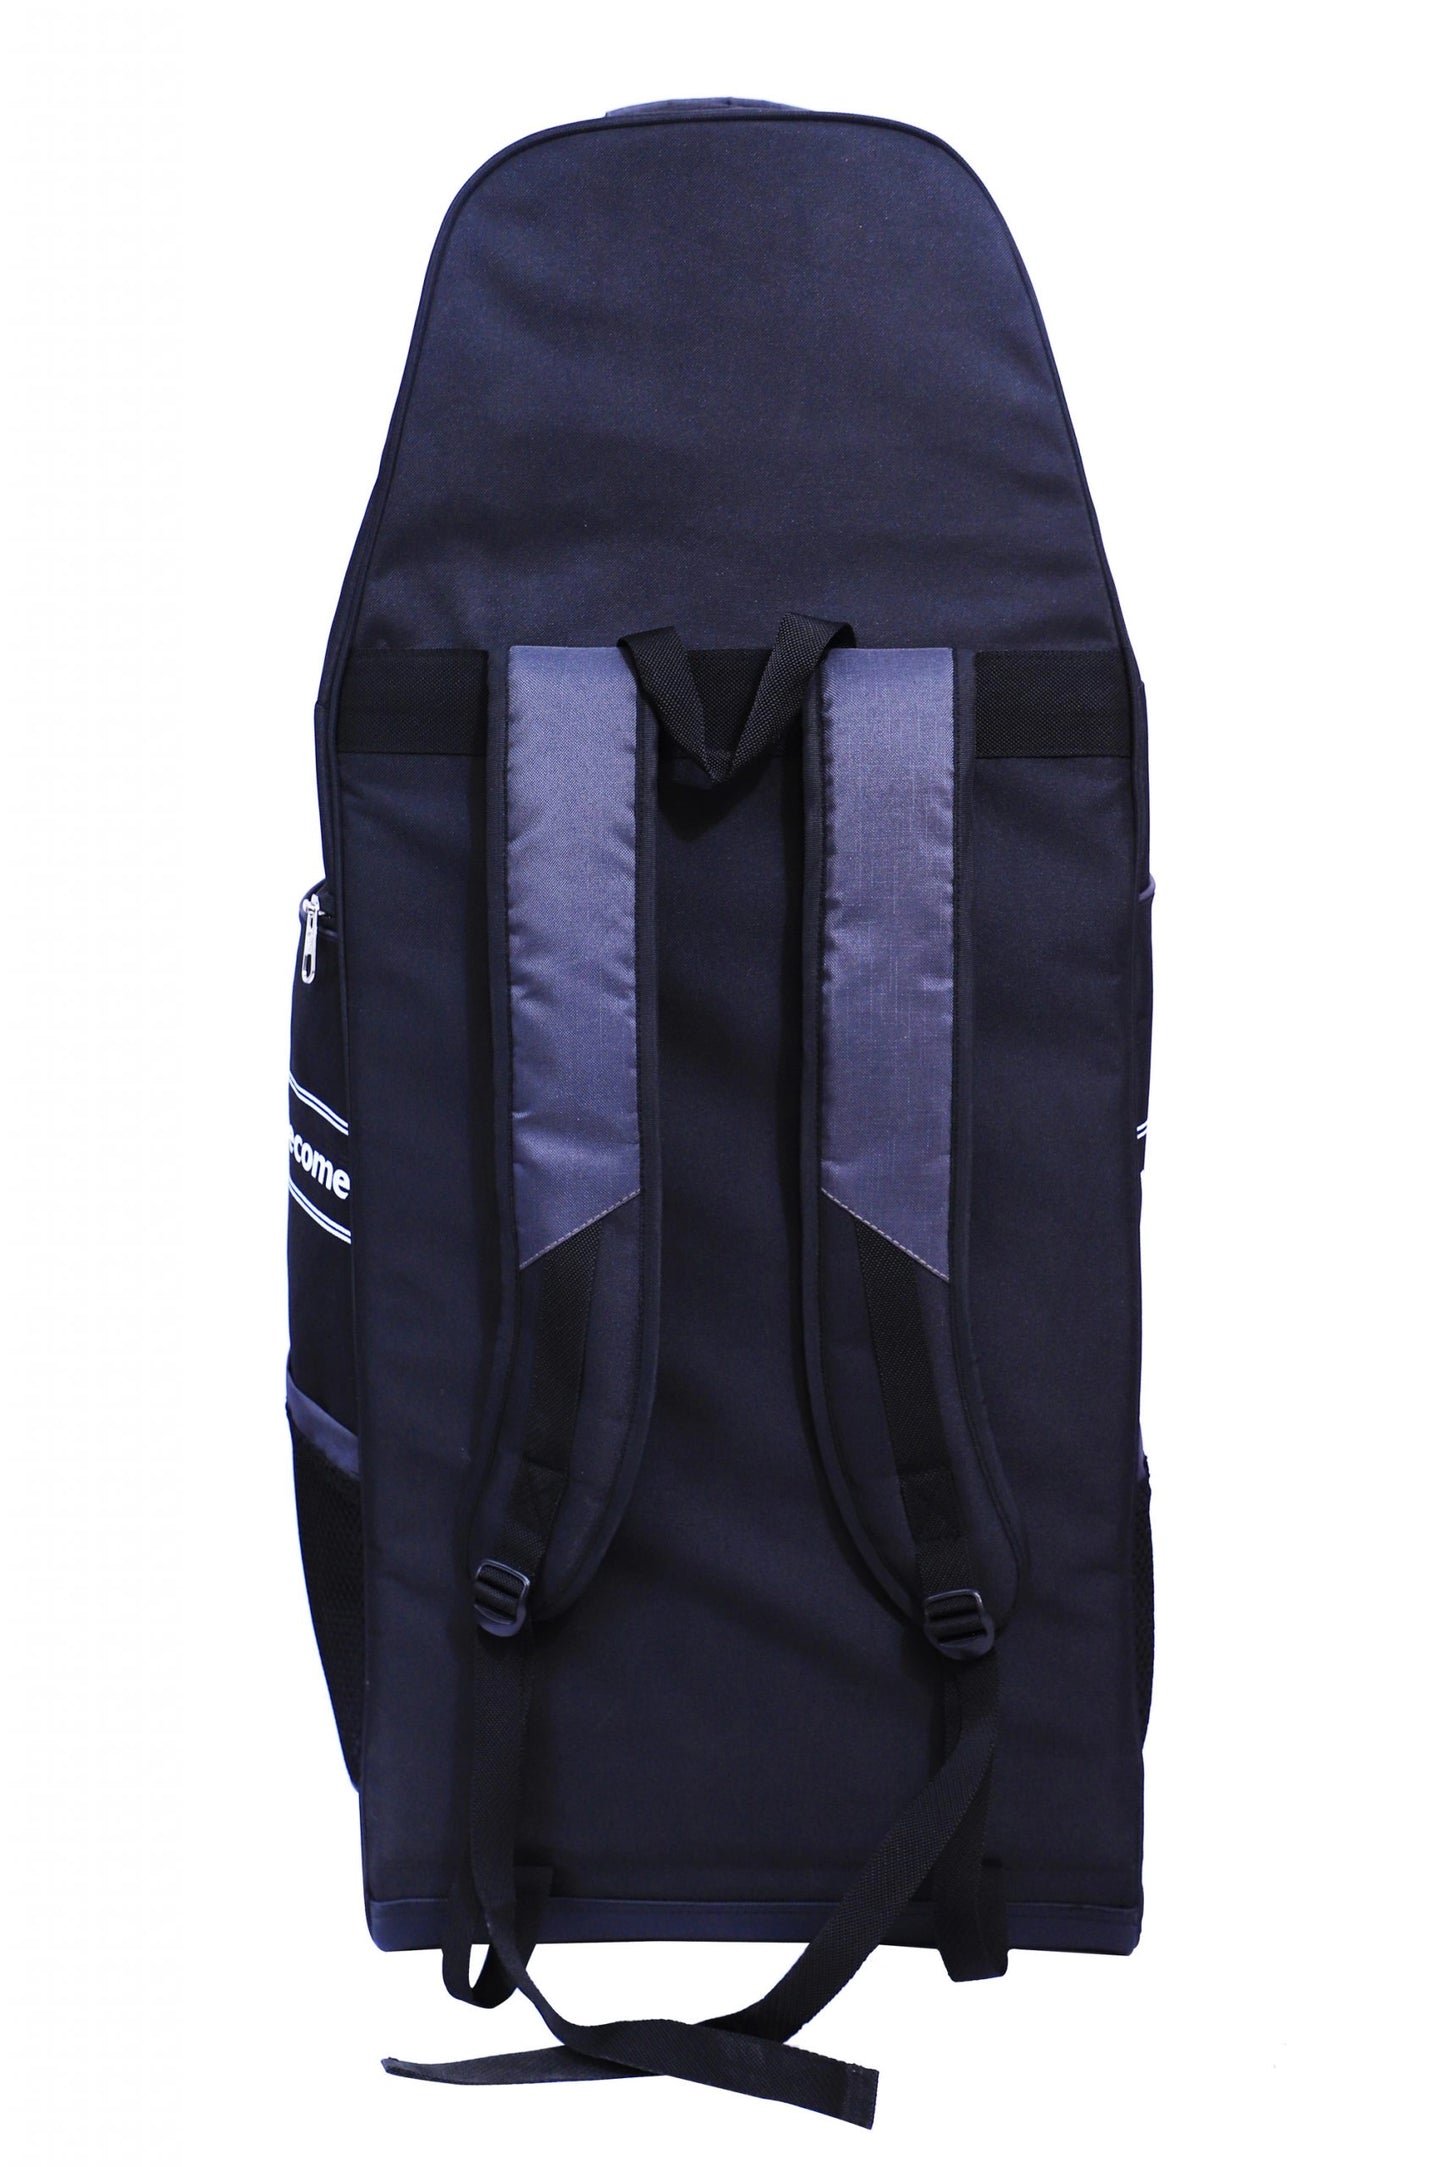 Kit bag SG MAXTRA STRIKE